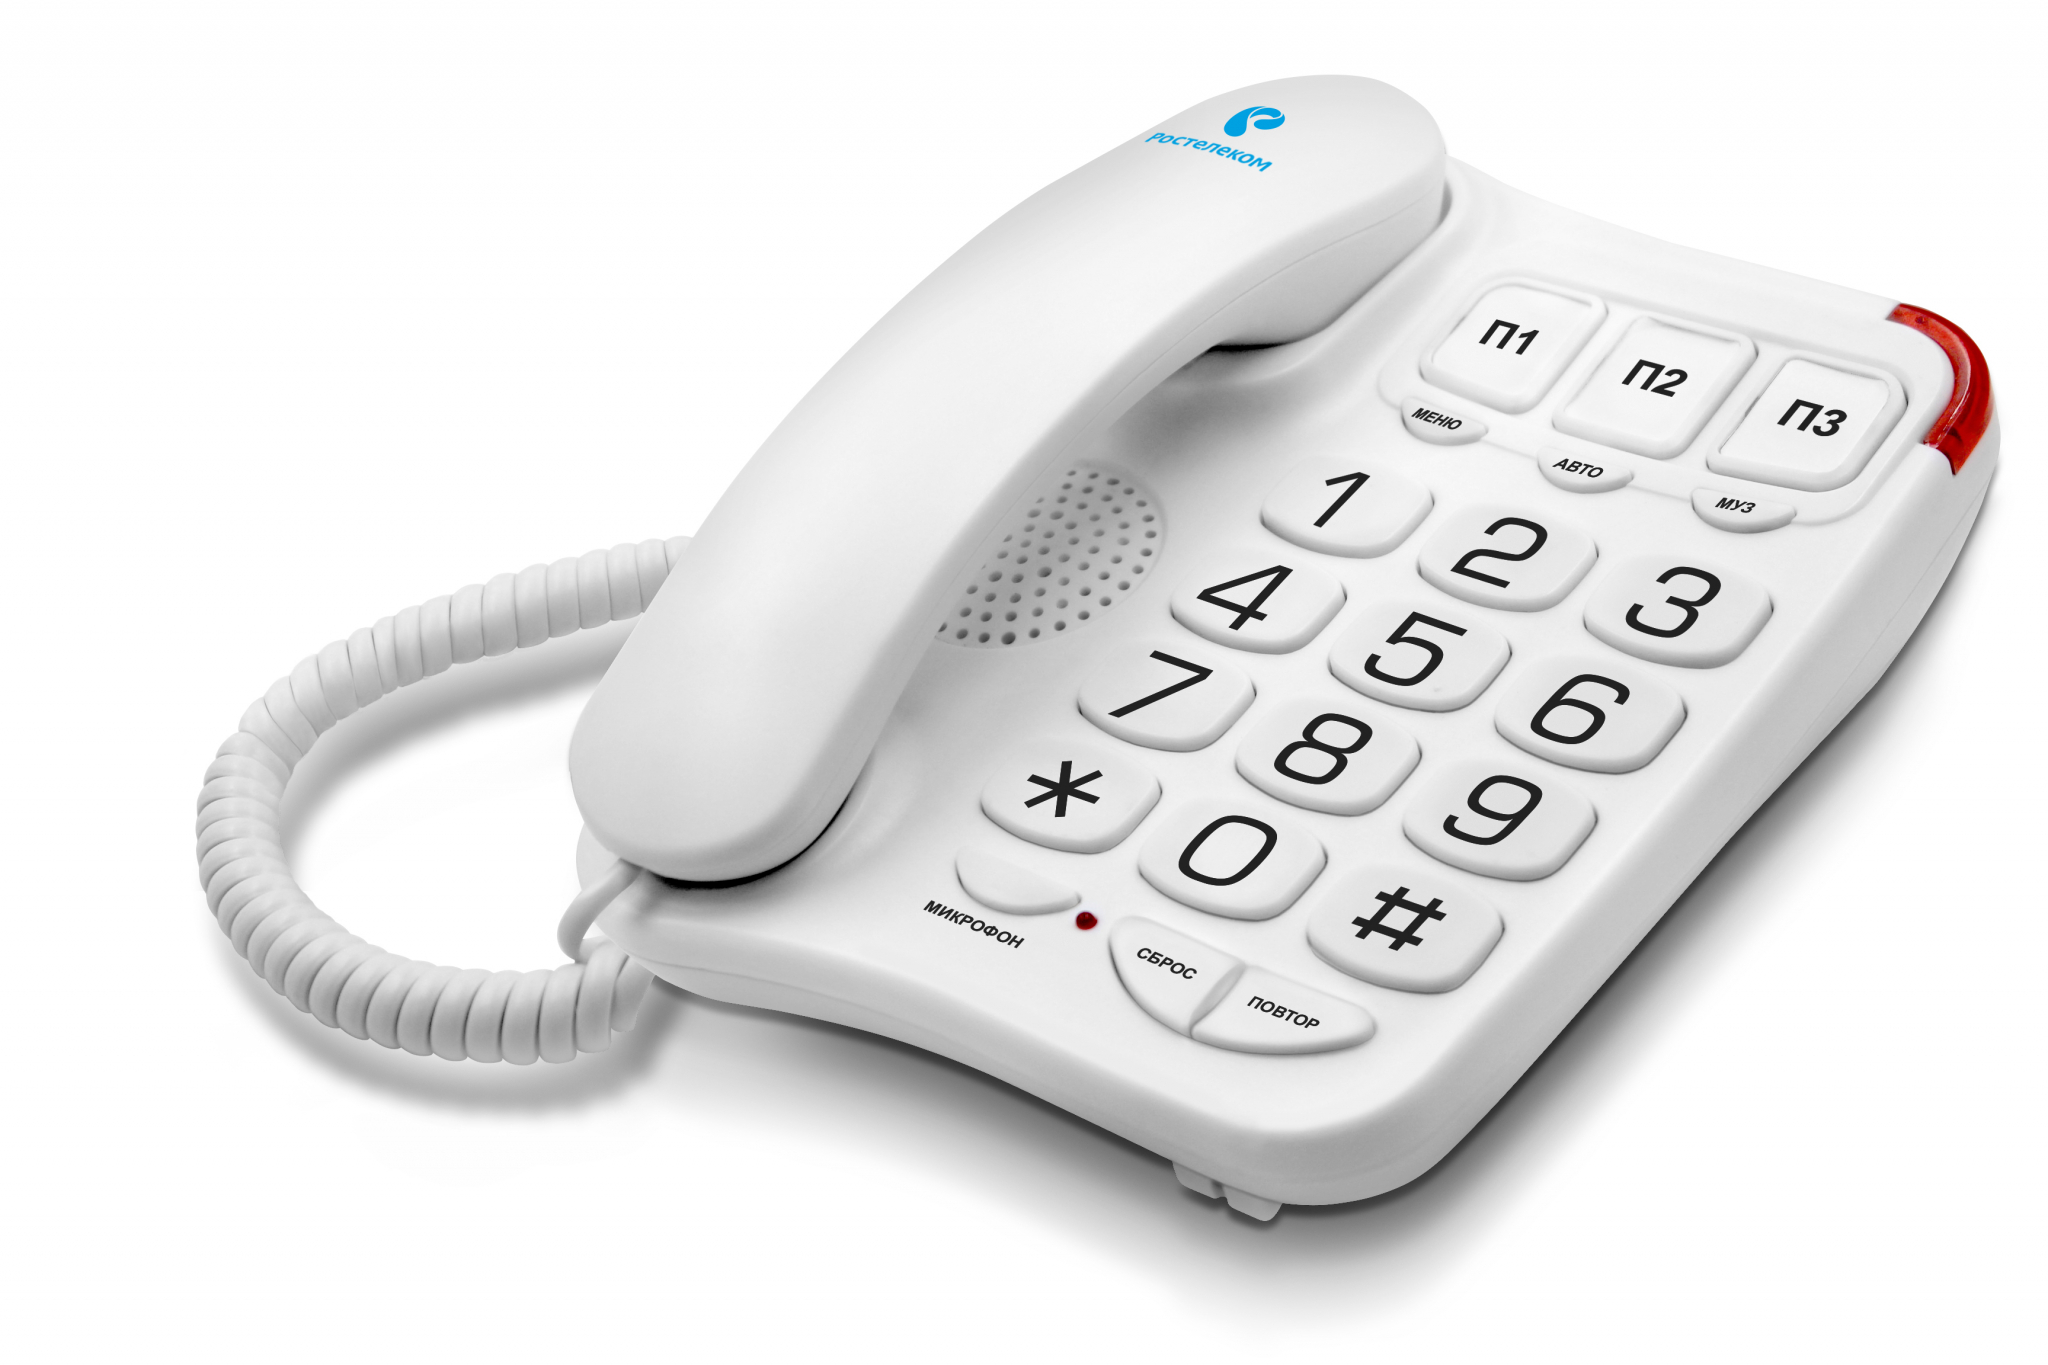 «Ростелеком» предлагает ярославцам фирменный домашний телефонный аппарат в комплекте с безлимитными тарифными планами